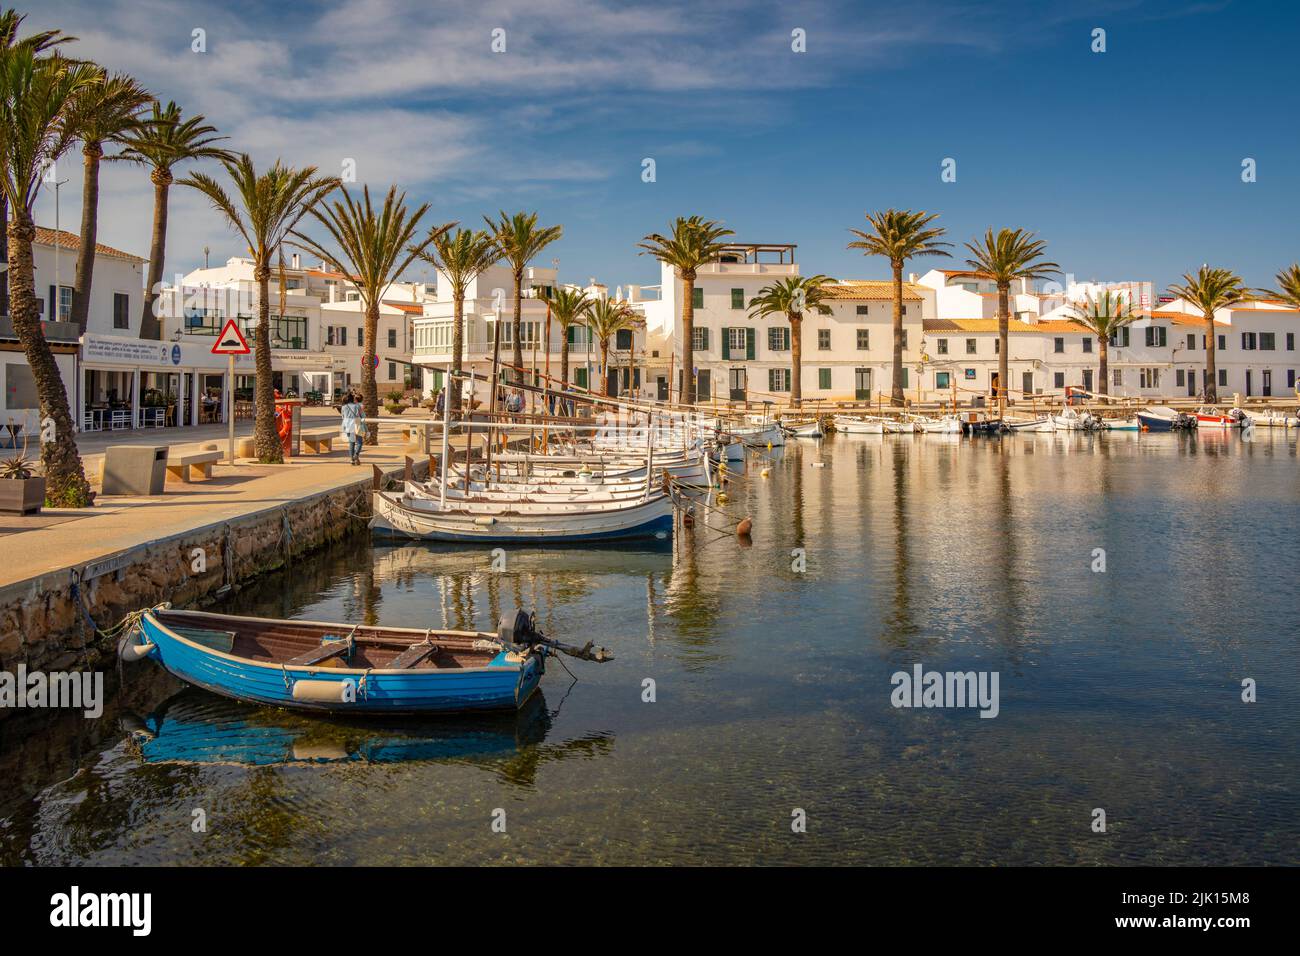 Vista de barcos y palmeras en el puerto deportivo y casas en Fornelles, Fornelles, Menorca, Islas Baleares, España, Mediterráneo, Europa Foto de stock